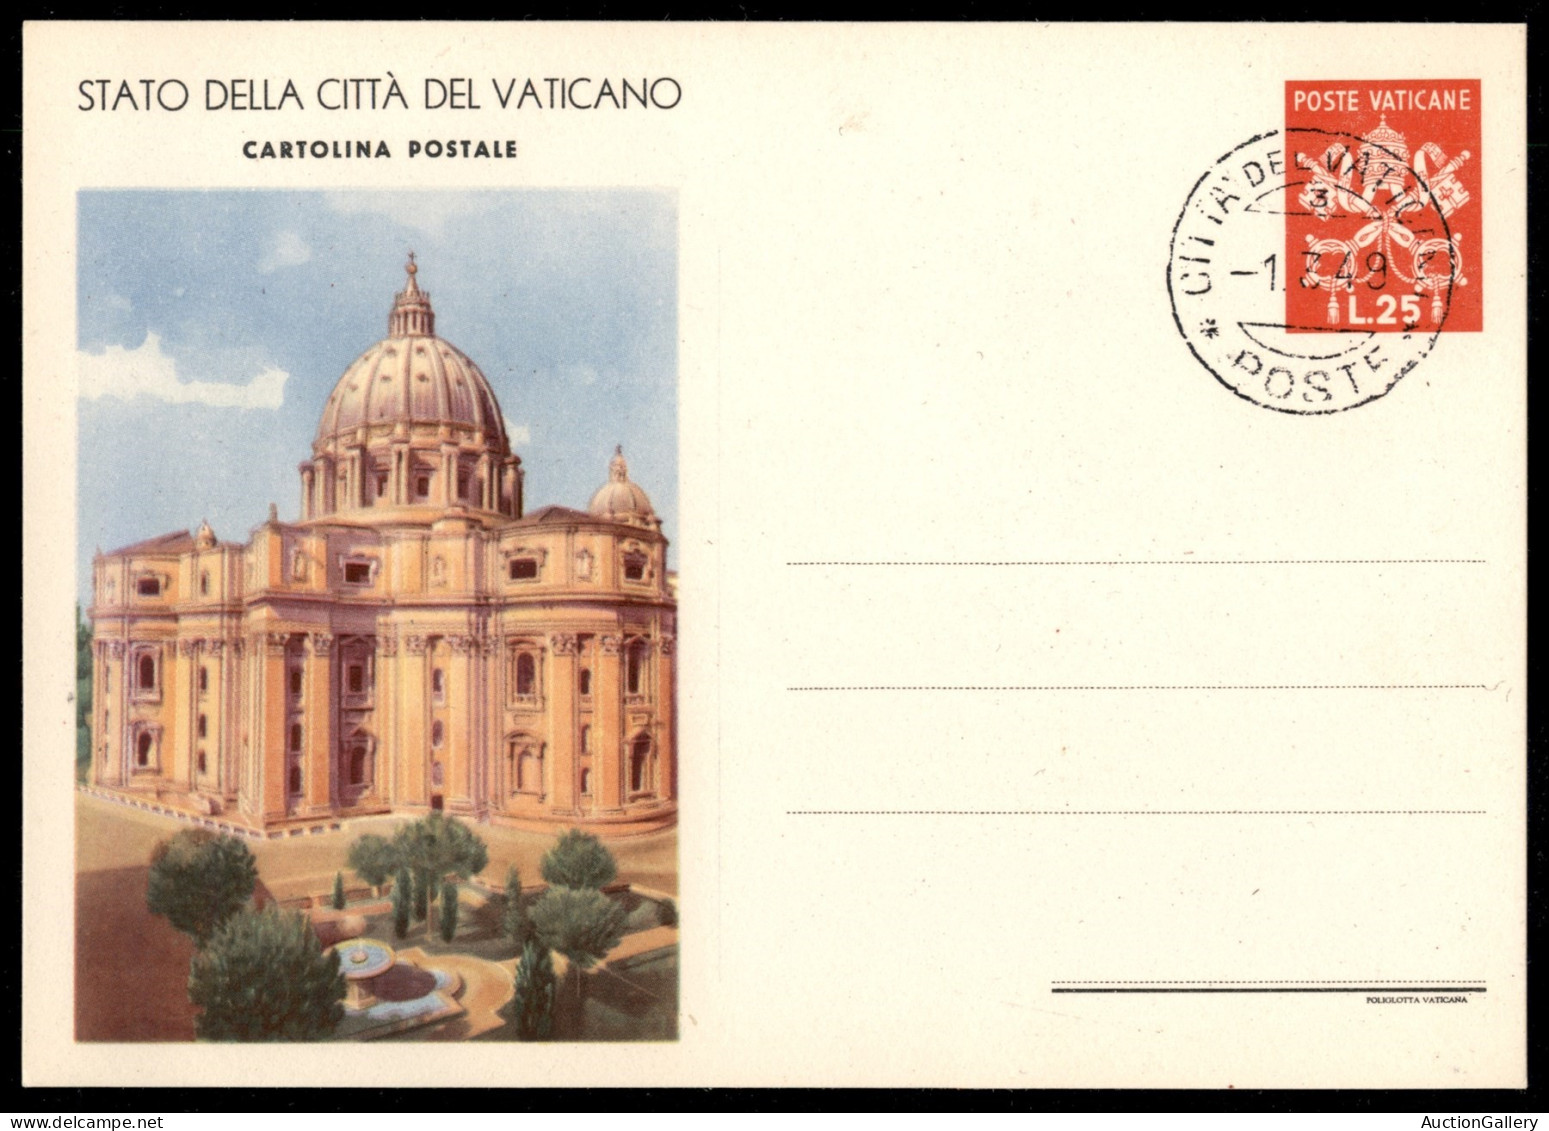 VATICANO - VATICANO - 1930 (1 marzo) - Vedute - 4 cartoline postali (8/1 + 2 - 9/1 + 2) della seconda tiratura annullate